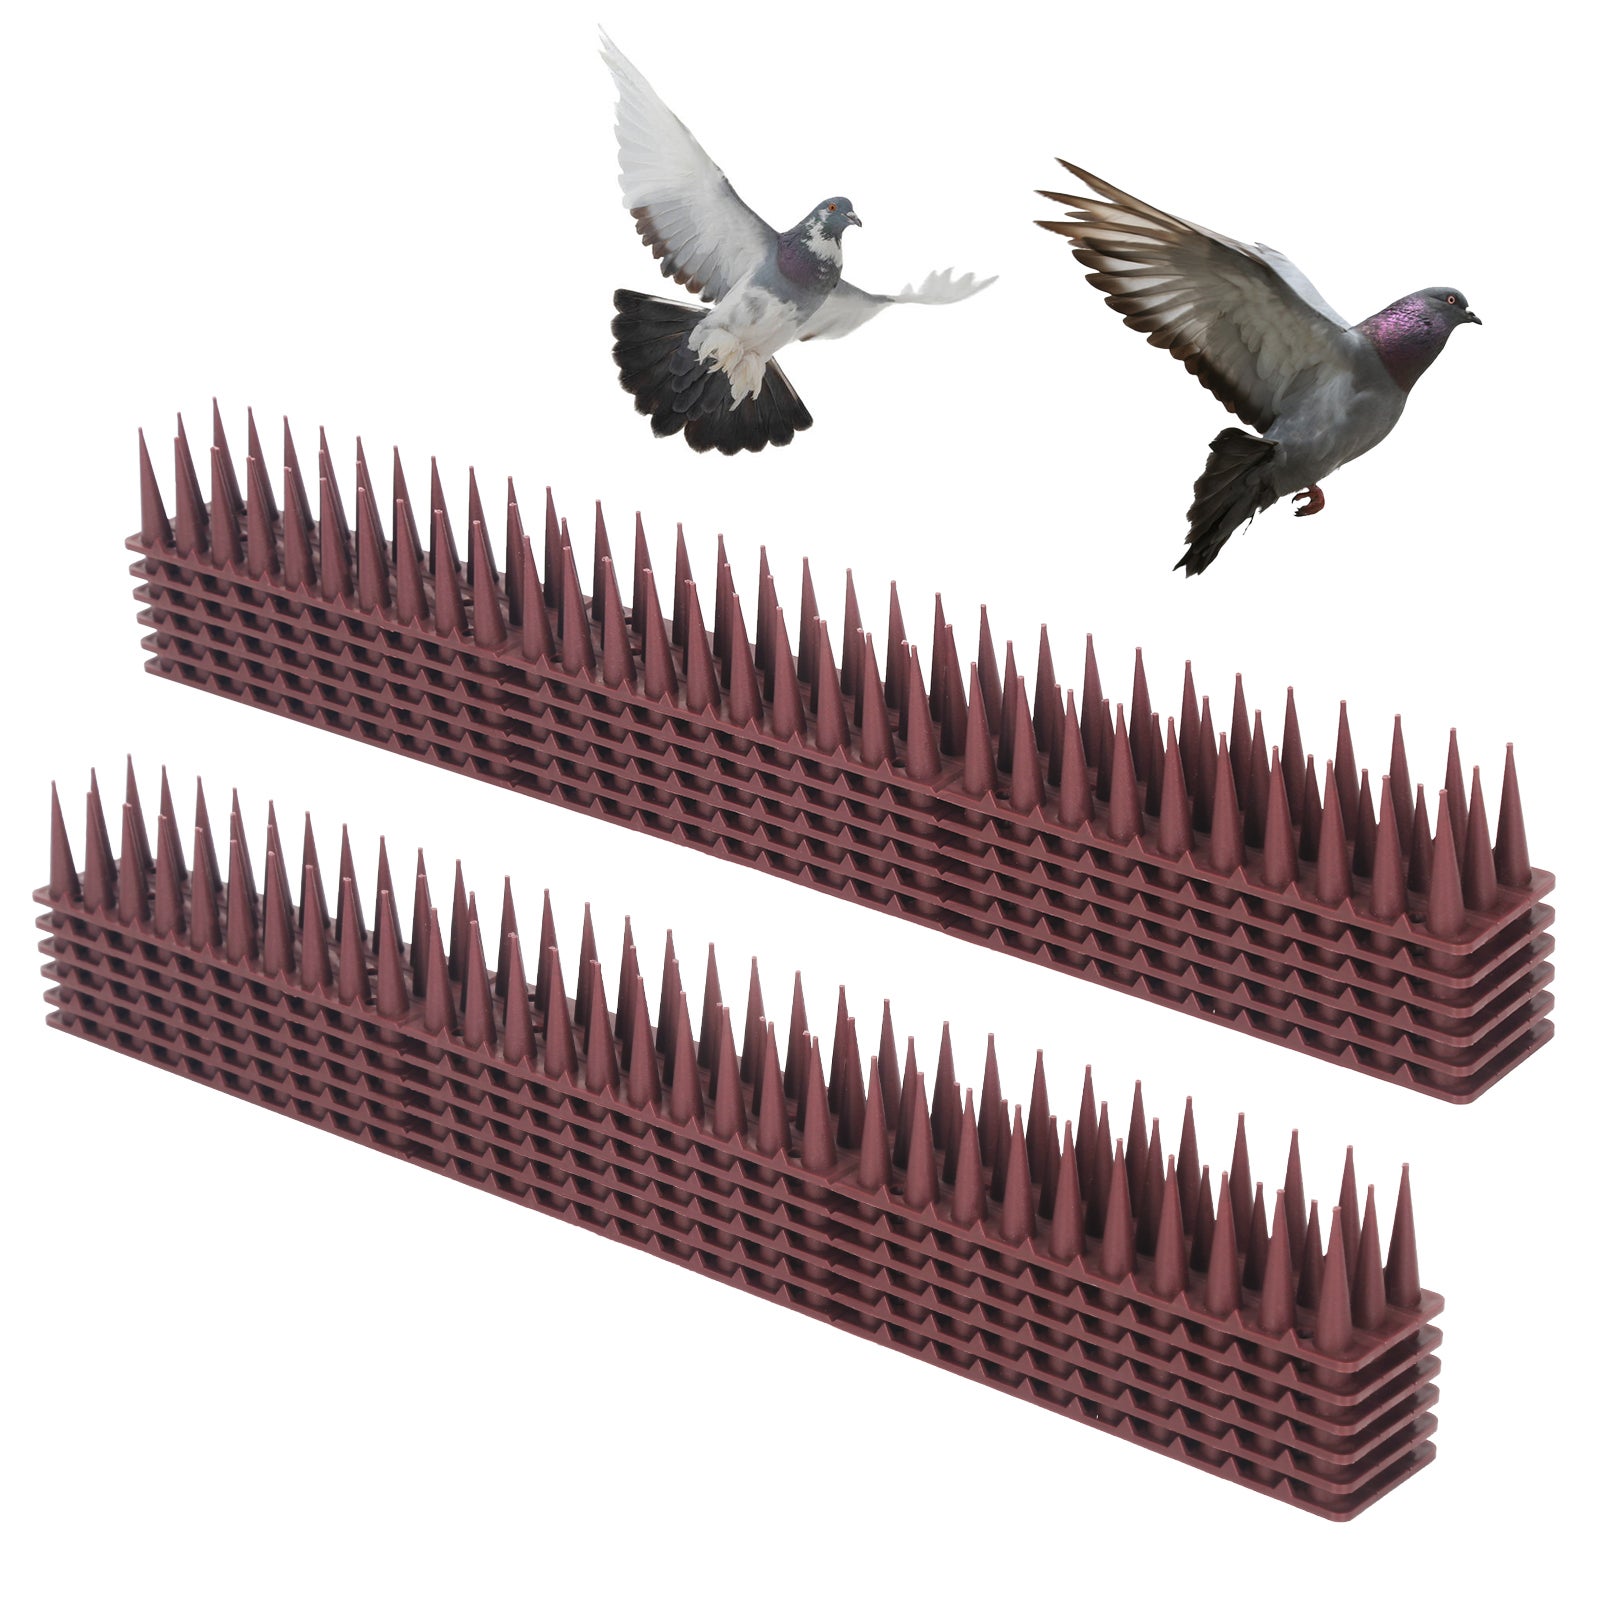 Vous nécessitez un système anti-pigeons efficace? Contactez-nous!